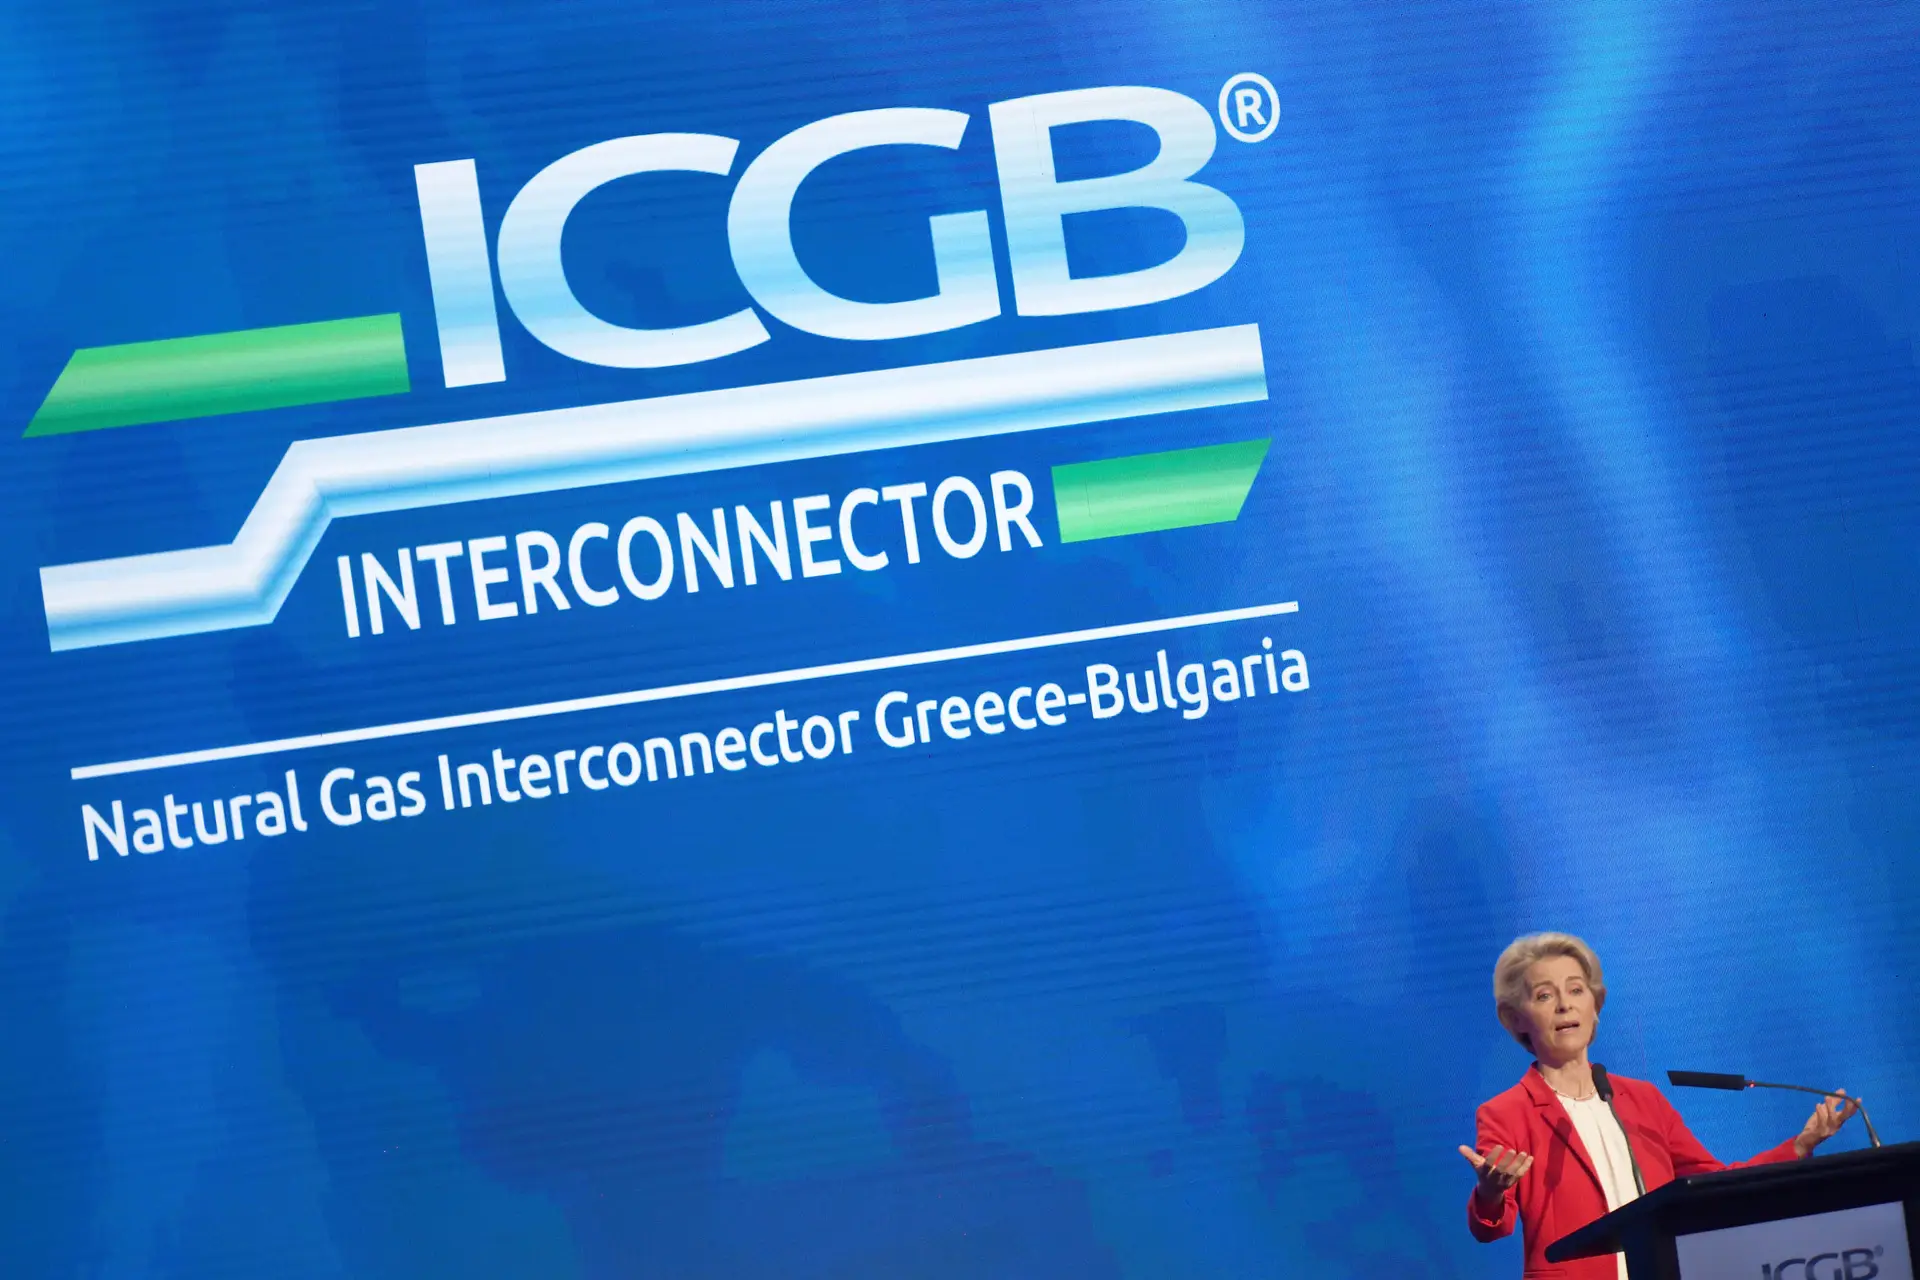 A presidente da Comissão Europeia, Ursula von der Leyen, na cerimónia que dá início às operações comerciais de um gasoduto greco-búlgaro.